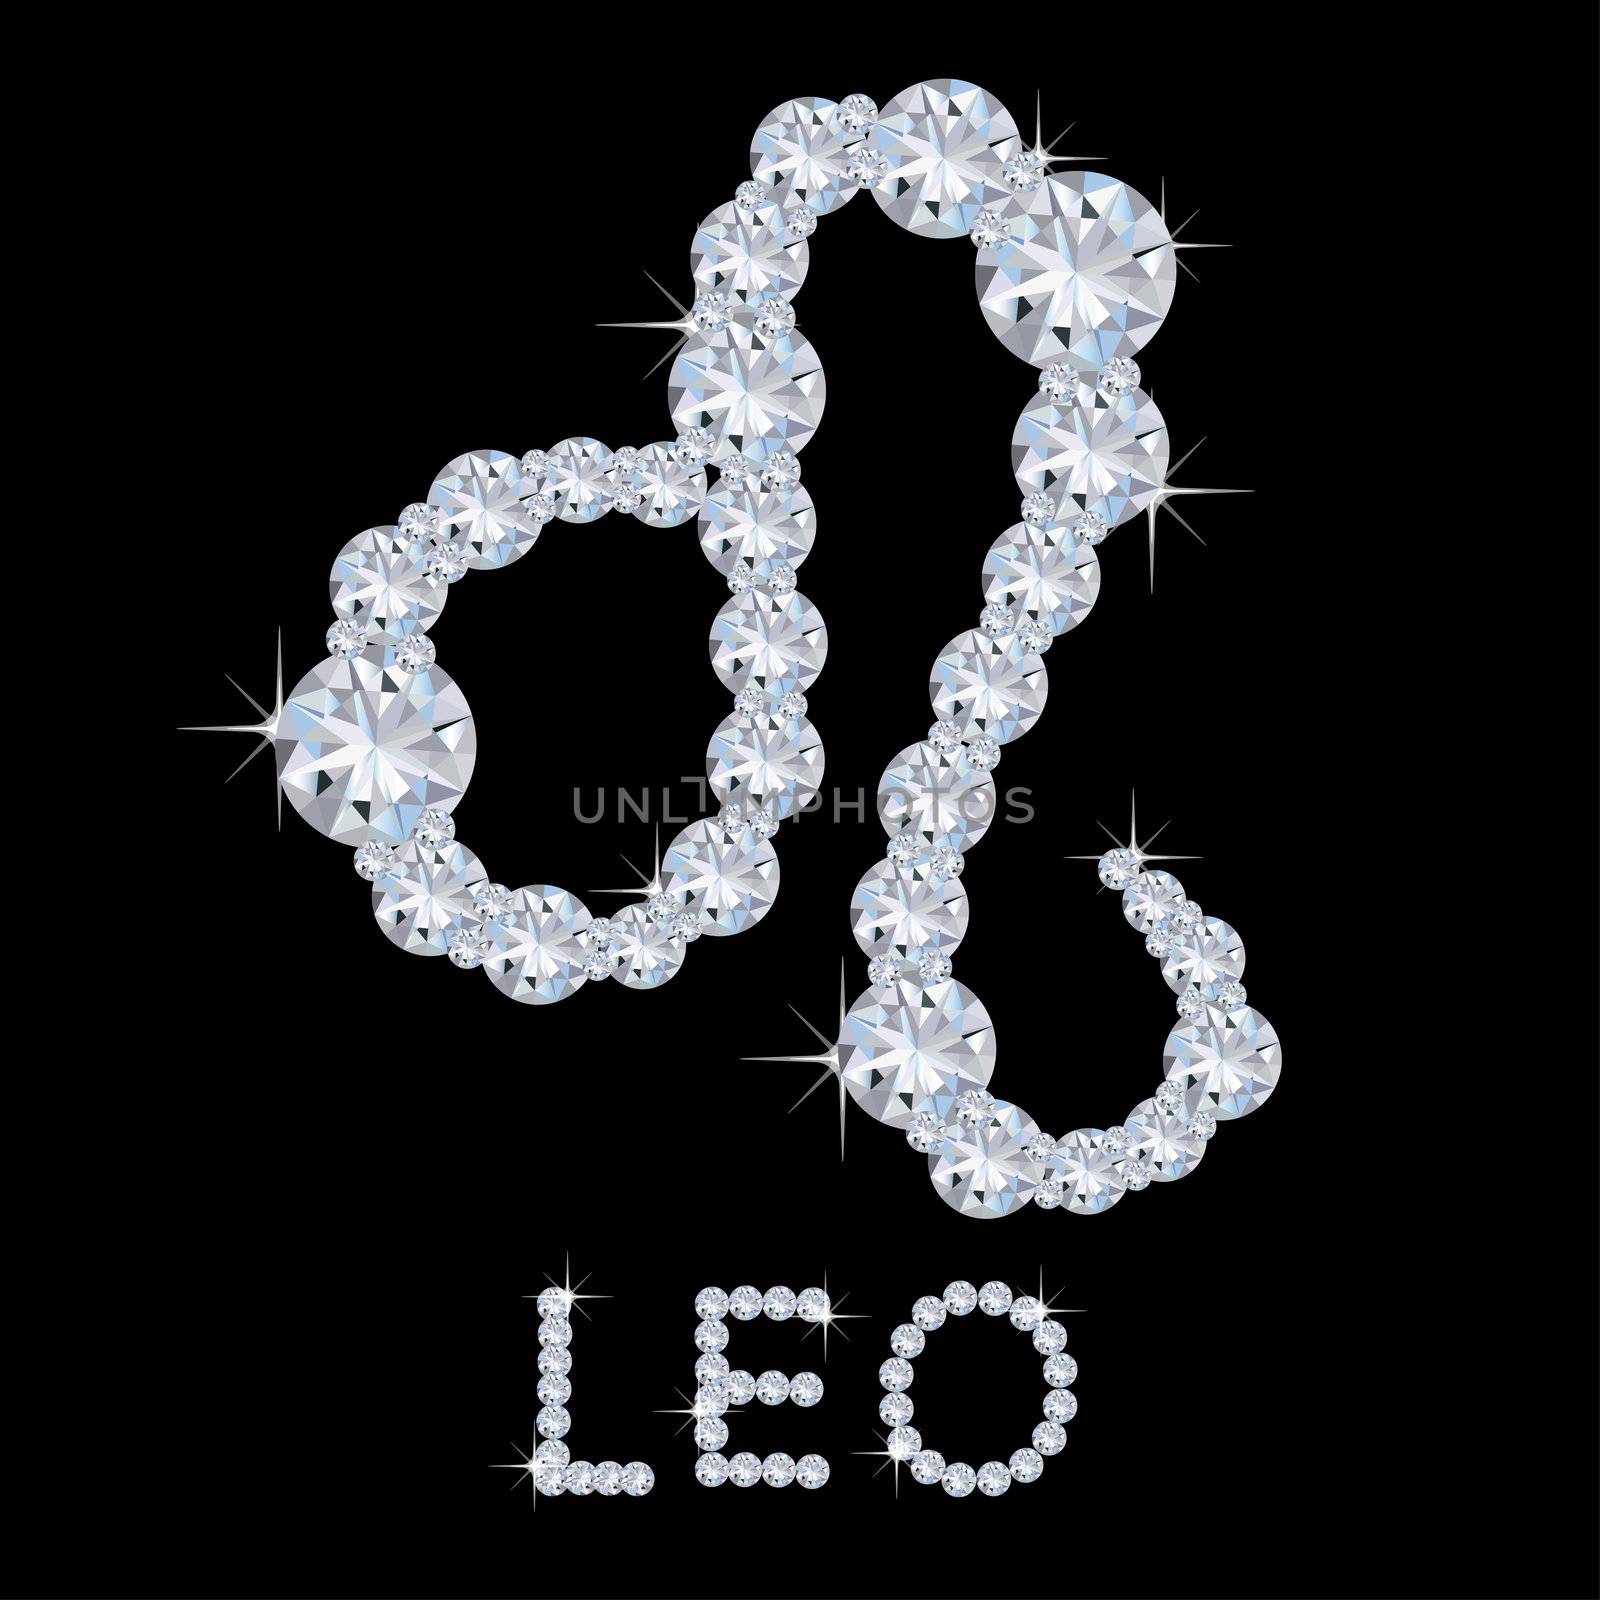 Diamond Zodiac Leo by peromarketing